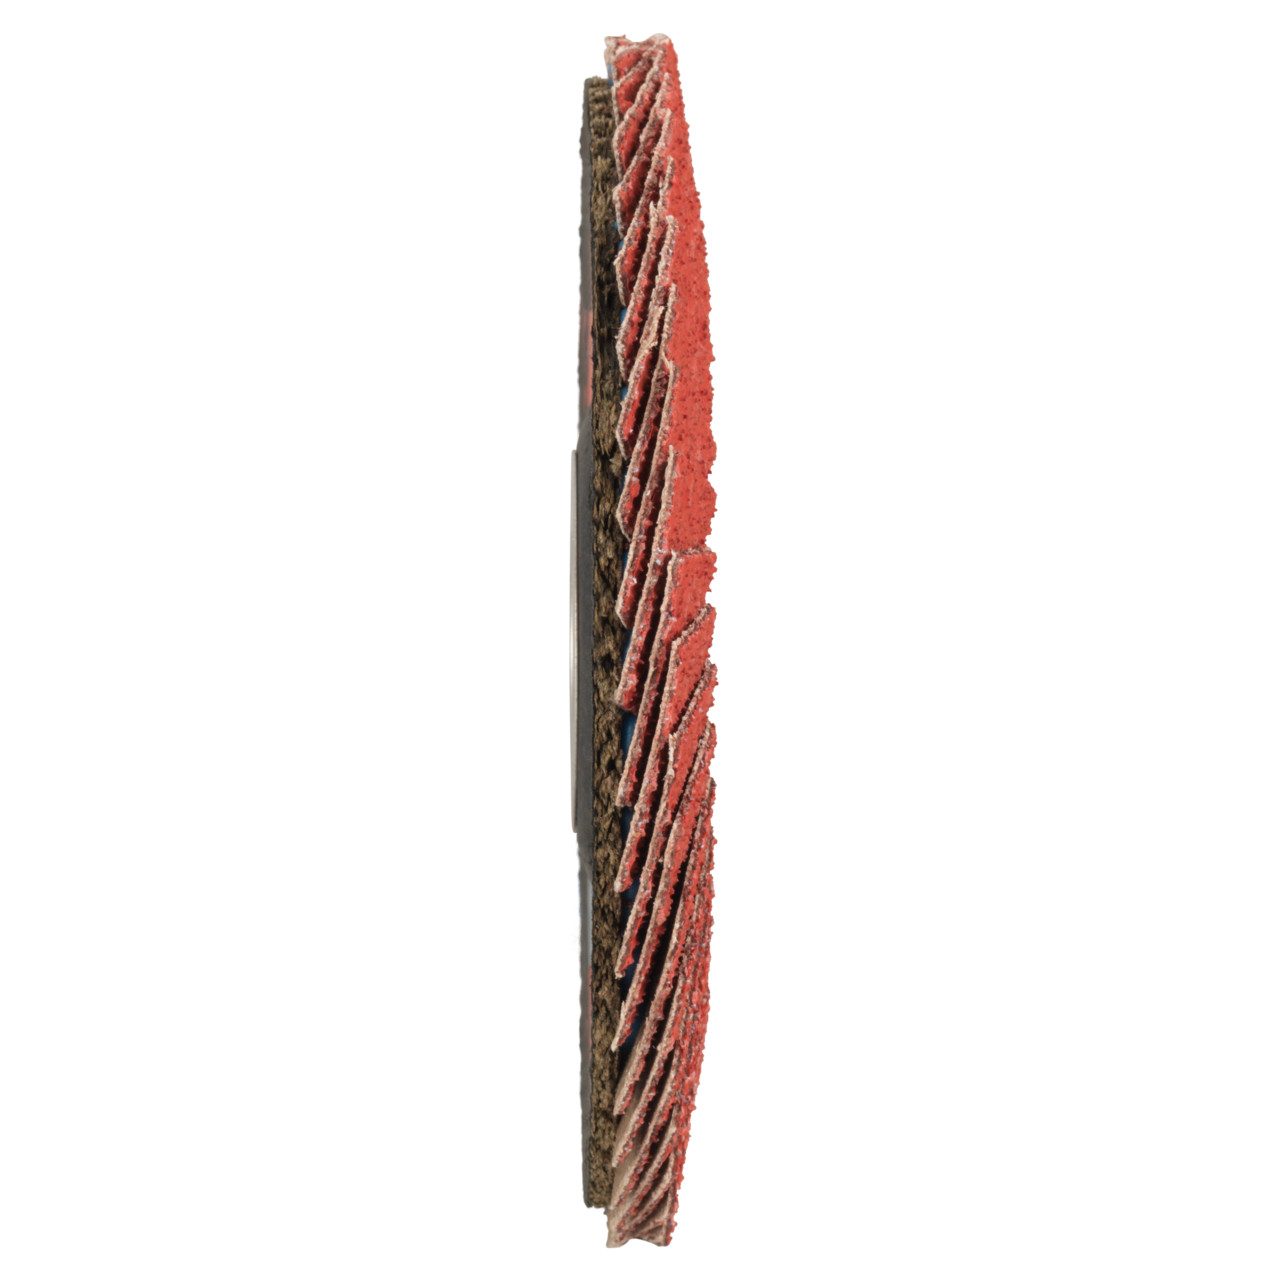 TYROLIT getande borgring DxH 115x22,2 CERAMIC voor roestvrij staal, P40, vorm: 27A - slingeruitvoering (glasvezeldragerhuisconstructie), Art. 645130